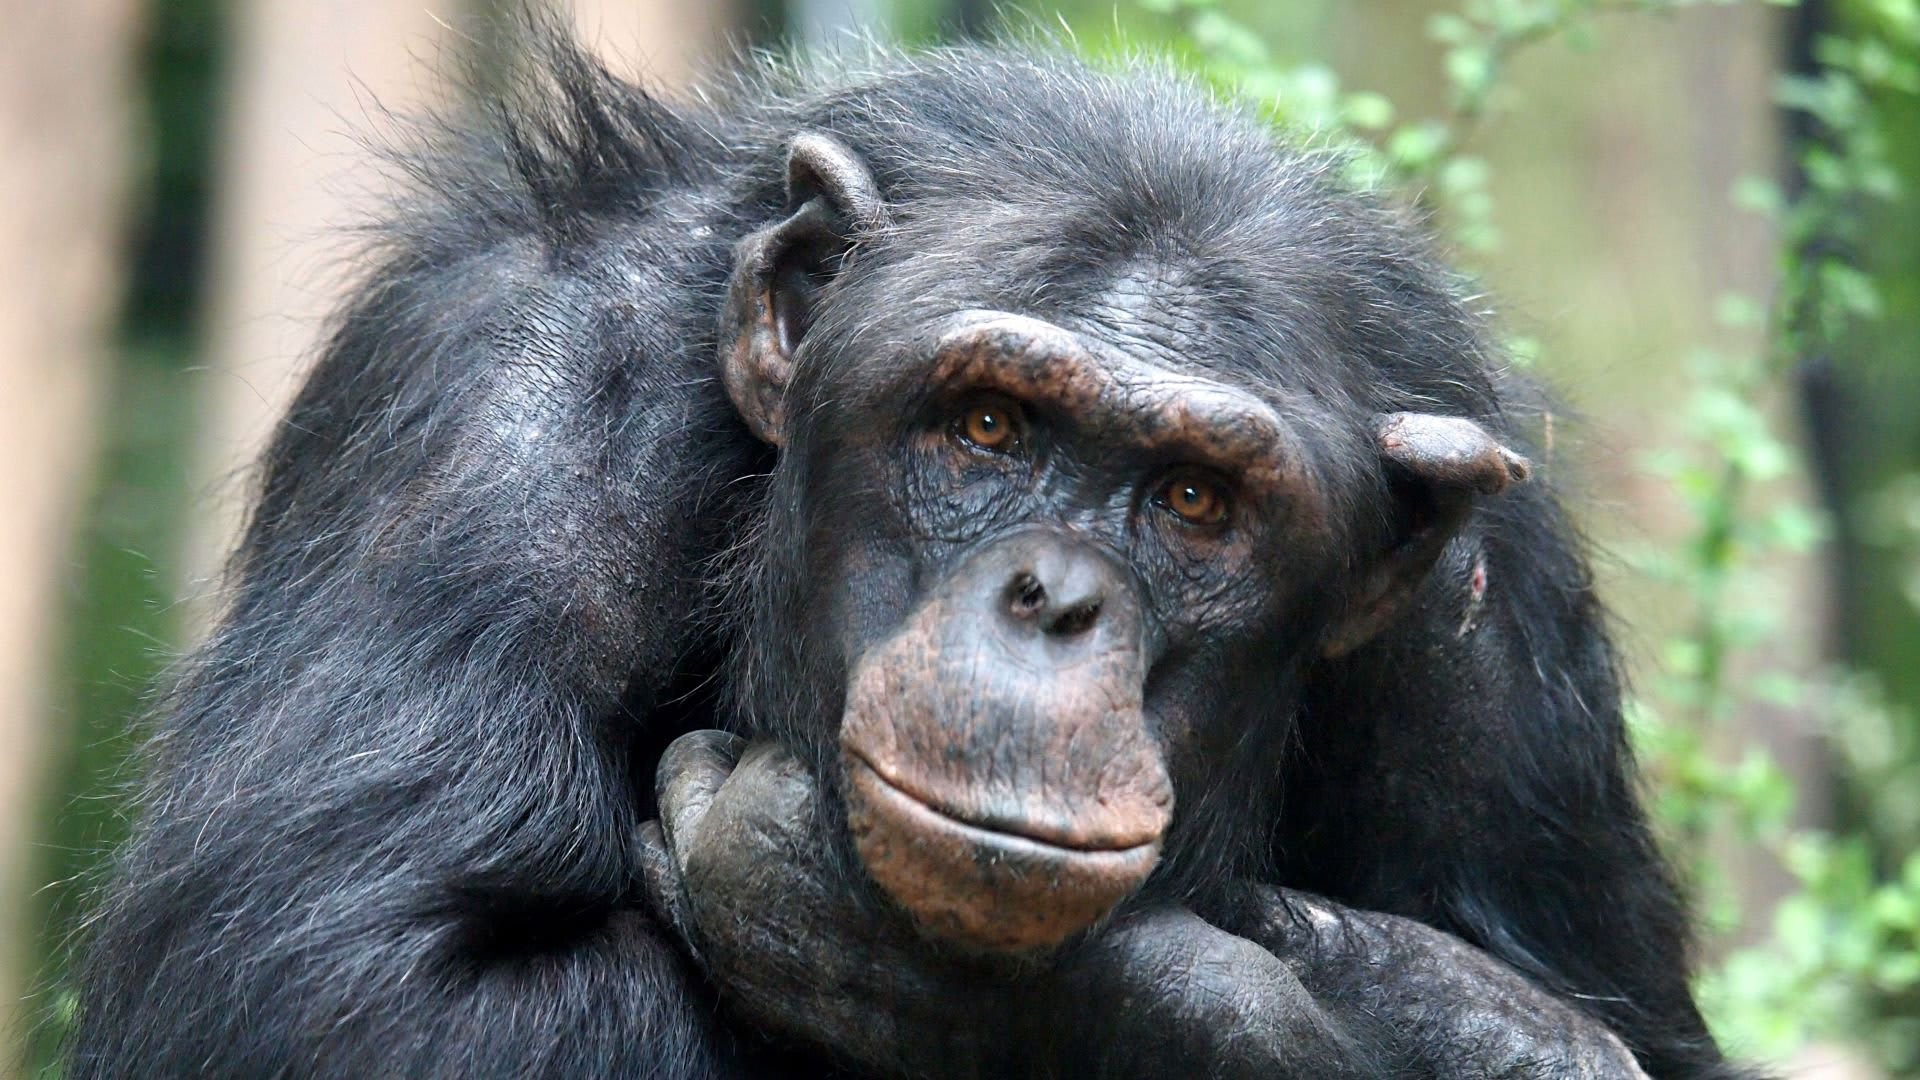 Artis laat 34-jarige vrouwelijke chimpansee Sabra inslapen